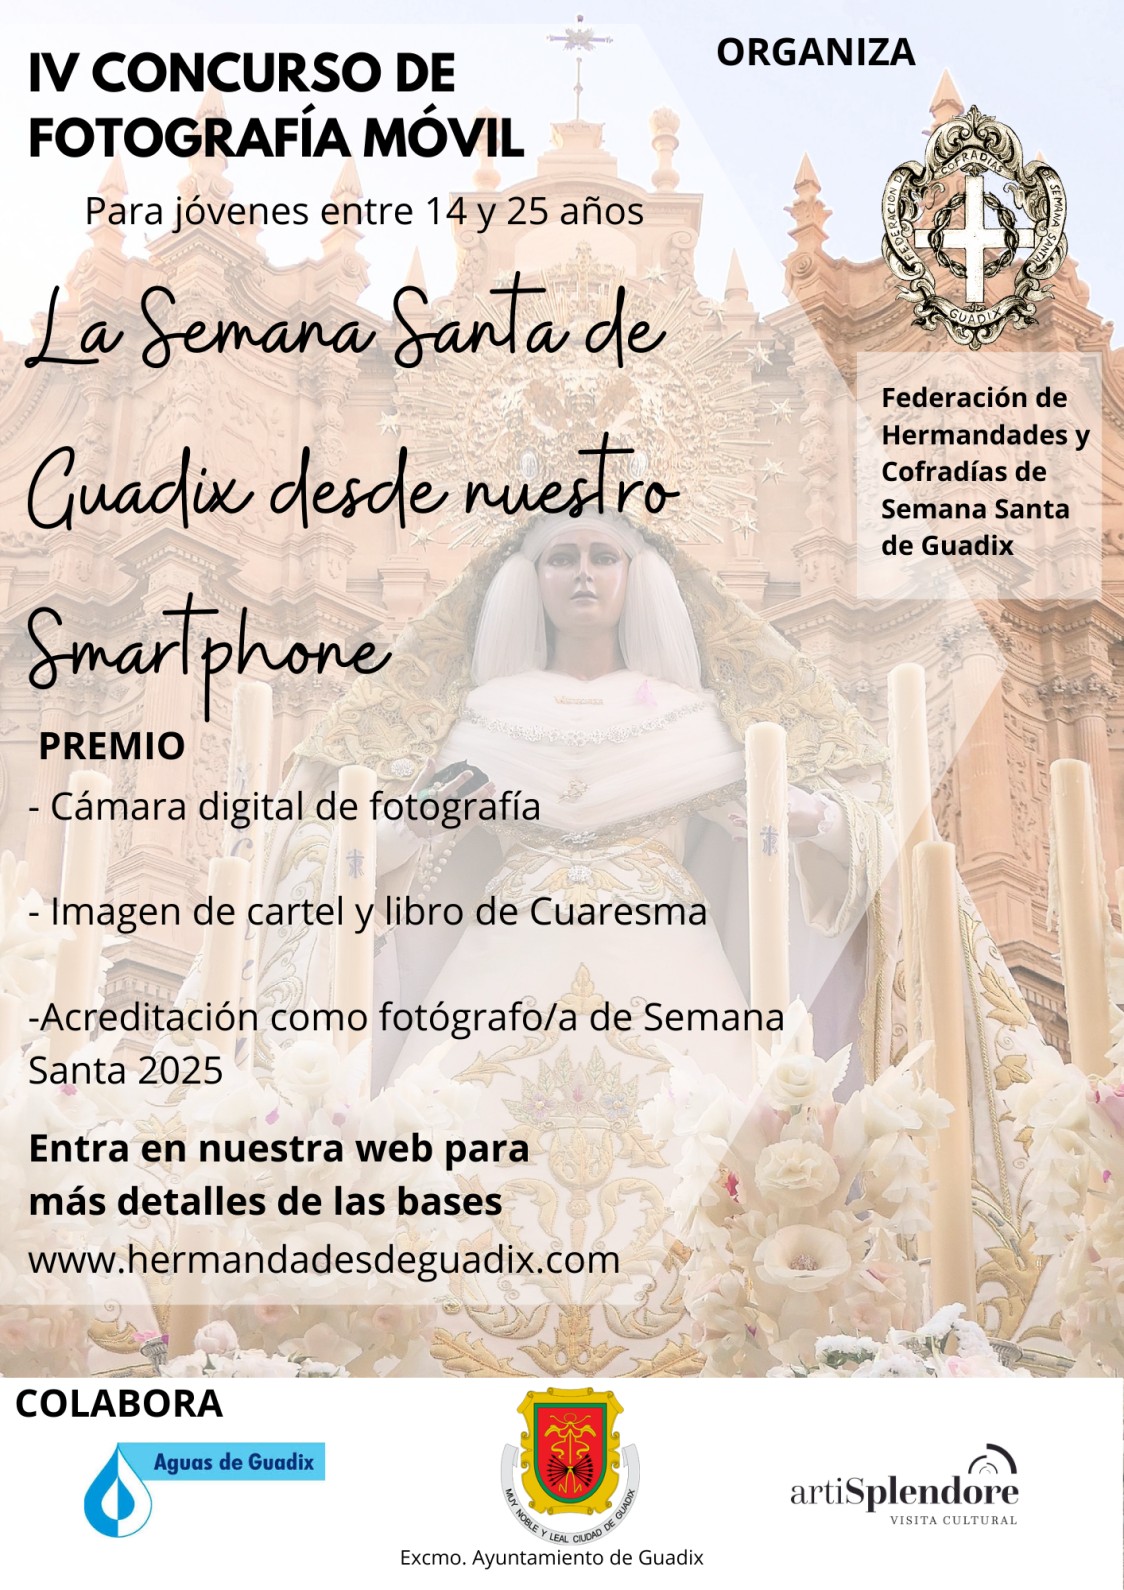 IV CONCURSO DE FOTOGRAFÍA MÓVIL	 “La Semana Santa de Guadix 2024 desde nuestro Smartphone”.